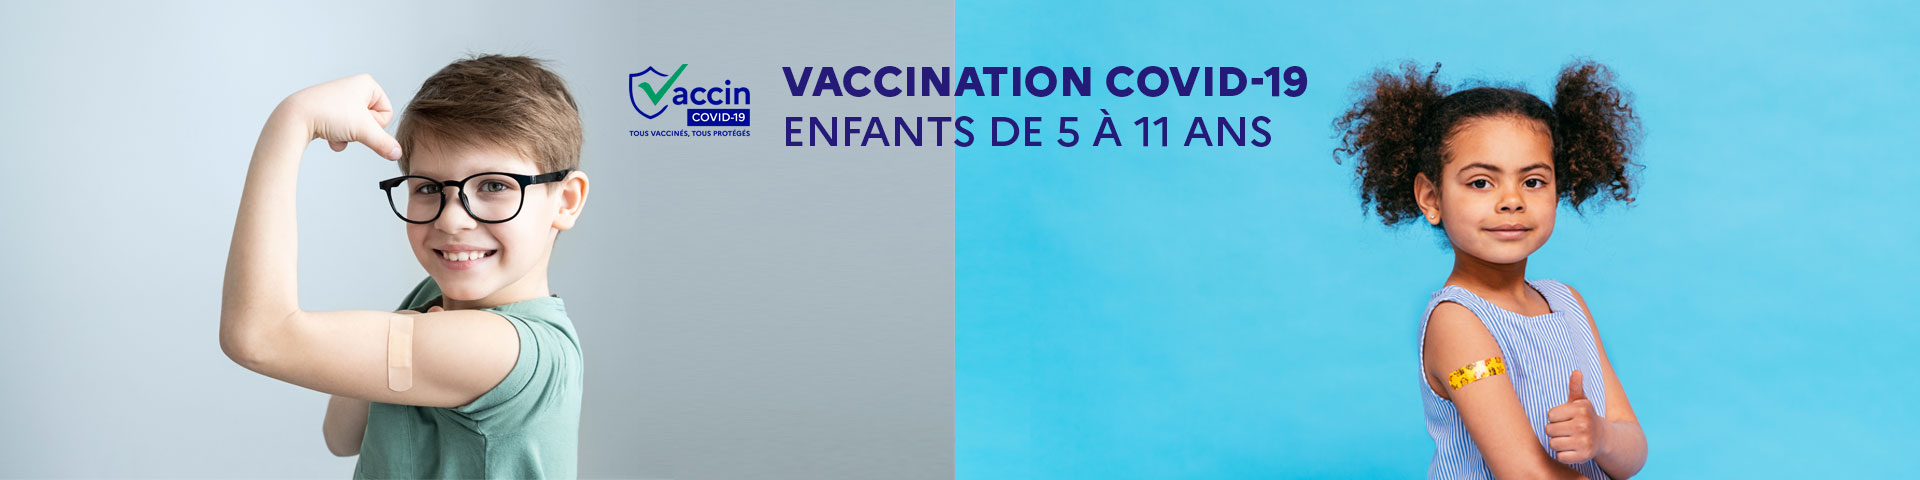 bannière vaccination enfants